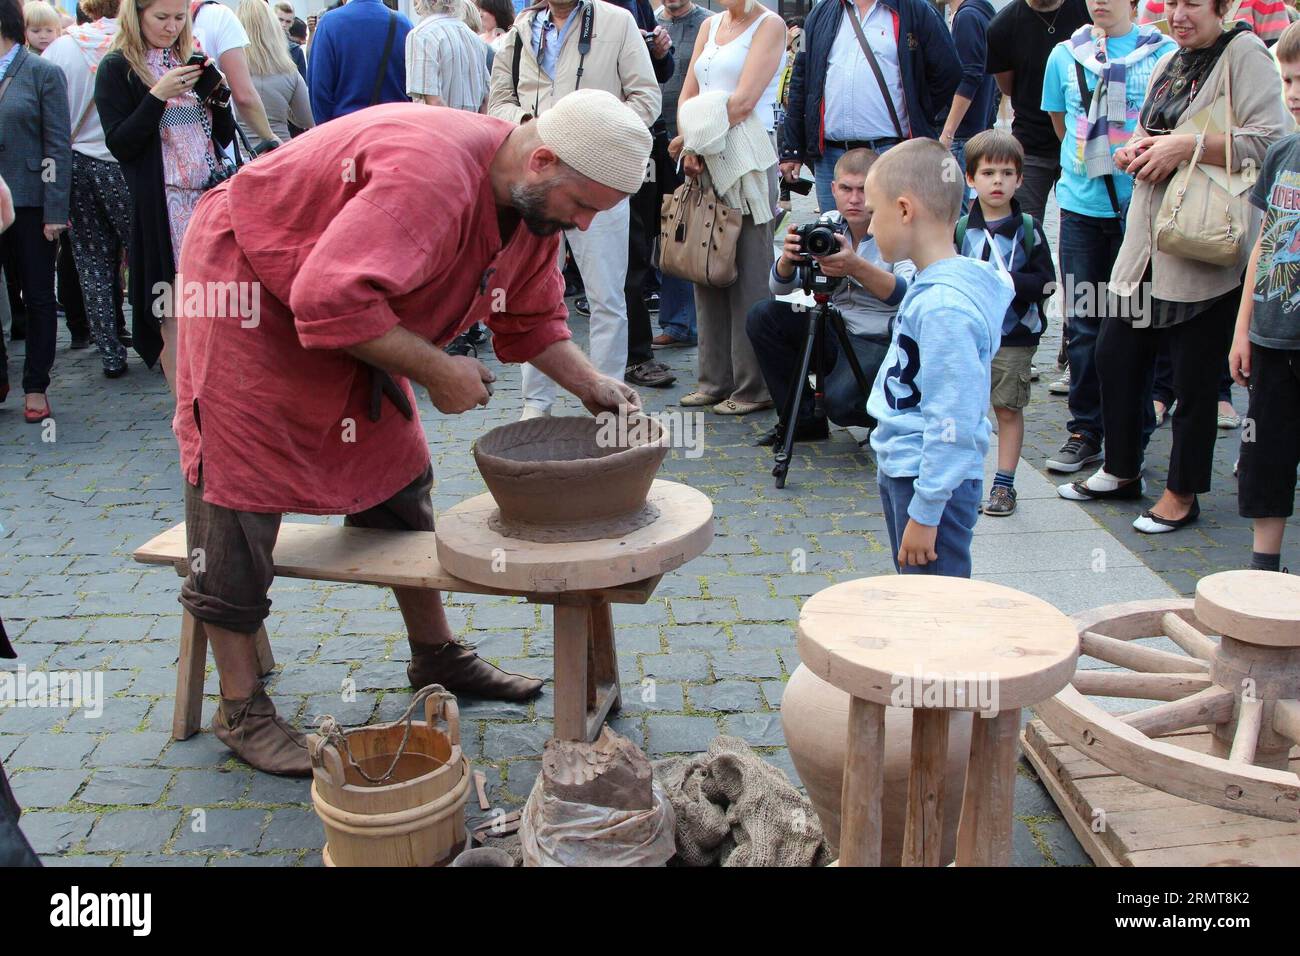 (140822) -- VILNIUS, 22 août 2014 -- Un artisan fabrique de la poterie à la foire Bartholomew à Vilnius, Lituanie, le 22 août 2014. La foire de deux jours a débuté ici vendredi, apportant de la ferronnerie, des articles en bois, des tissus, des œuvres en céramique faites par des artisans locaux aux visiteurs. La Foire de Bartholomew a lieu régulièrement en Lituanie depuis 2009, en commémoration de Saint Bartholomew s Day, ainsi que l'exposition de l'artisanat traditionnel lituanien. ) LITUANIE-VILNIUS-LEISURE-BATHOLOMEW FAIR MildaxJukneviciute PUBLICATIONxNOTxINxCHN Vilnius août 22 2014 un artisan fabrique de la poterie SUR la Foire Bartholomew en V. Banque D'Images